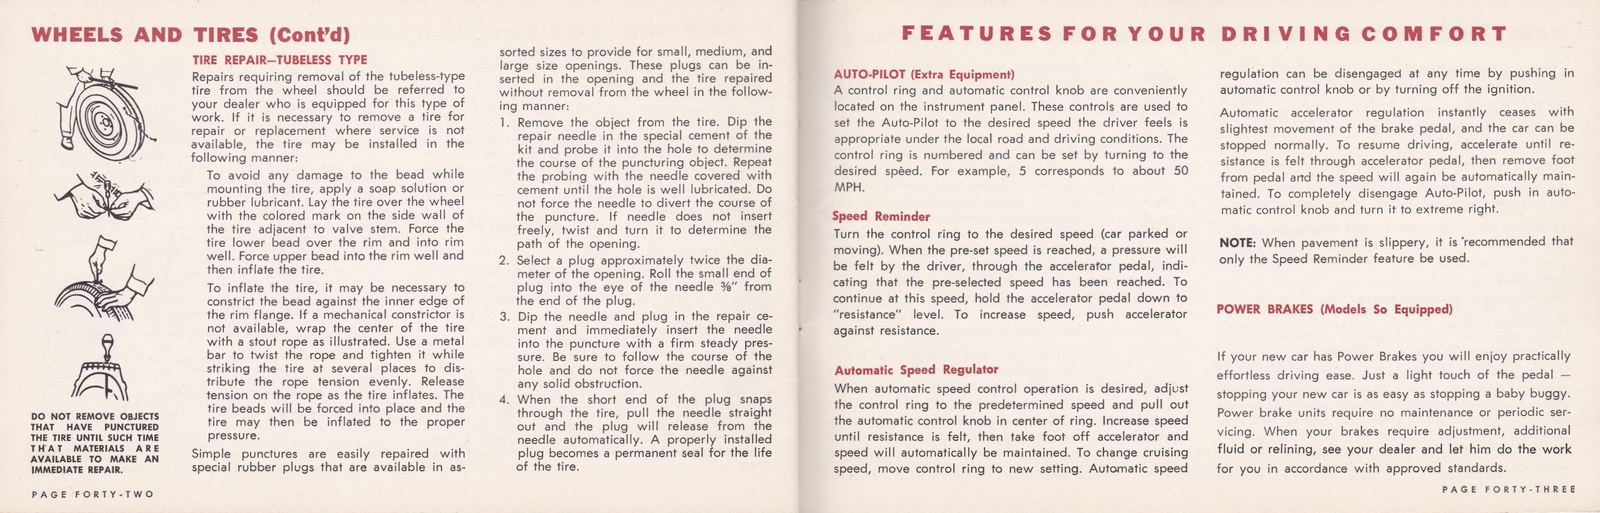 n_1964 Chrysler Owner's Manual (Cdn)-42-43.jpg